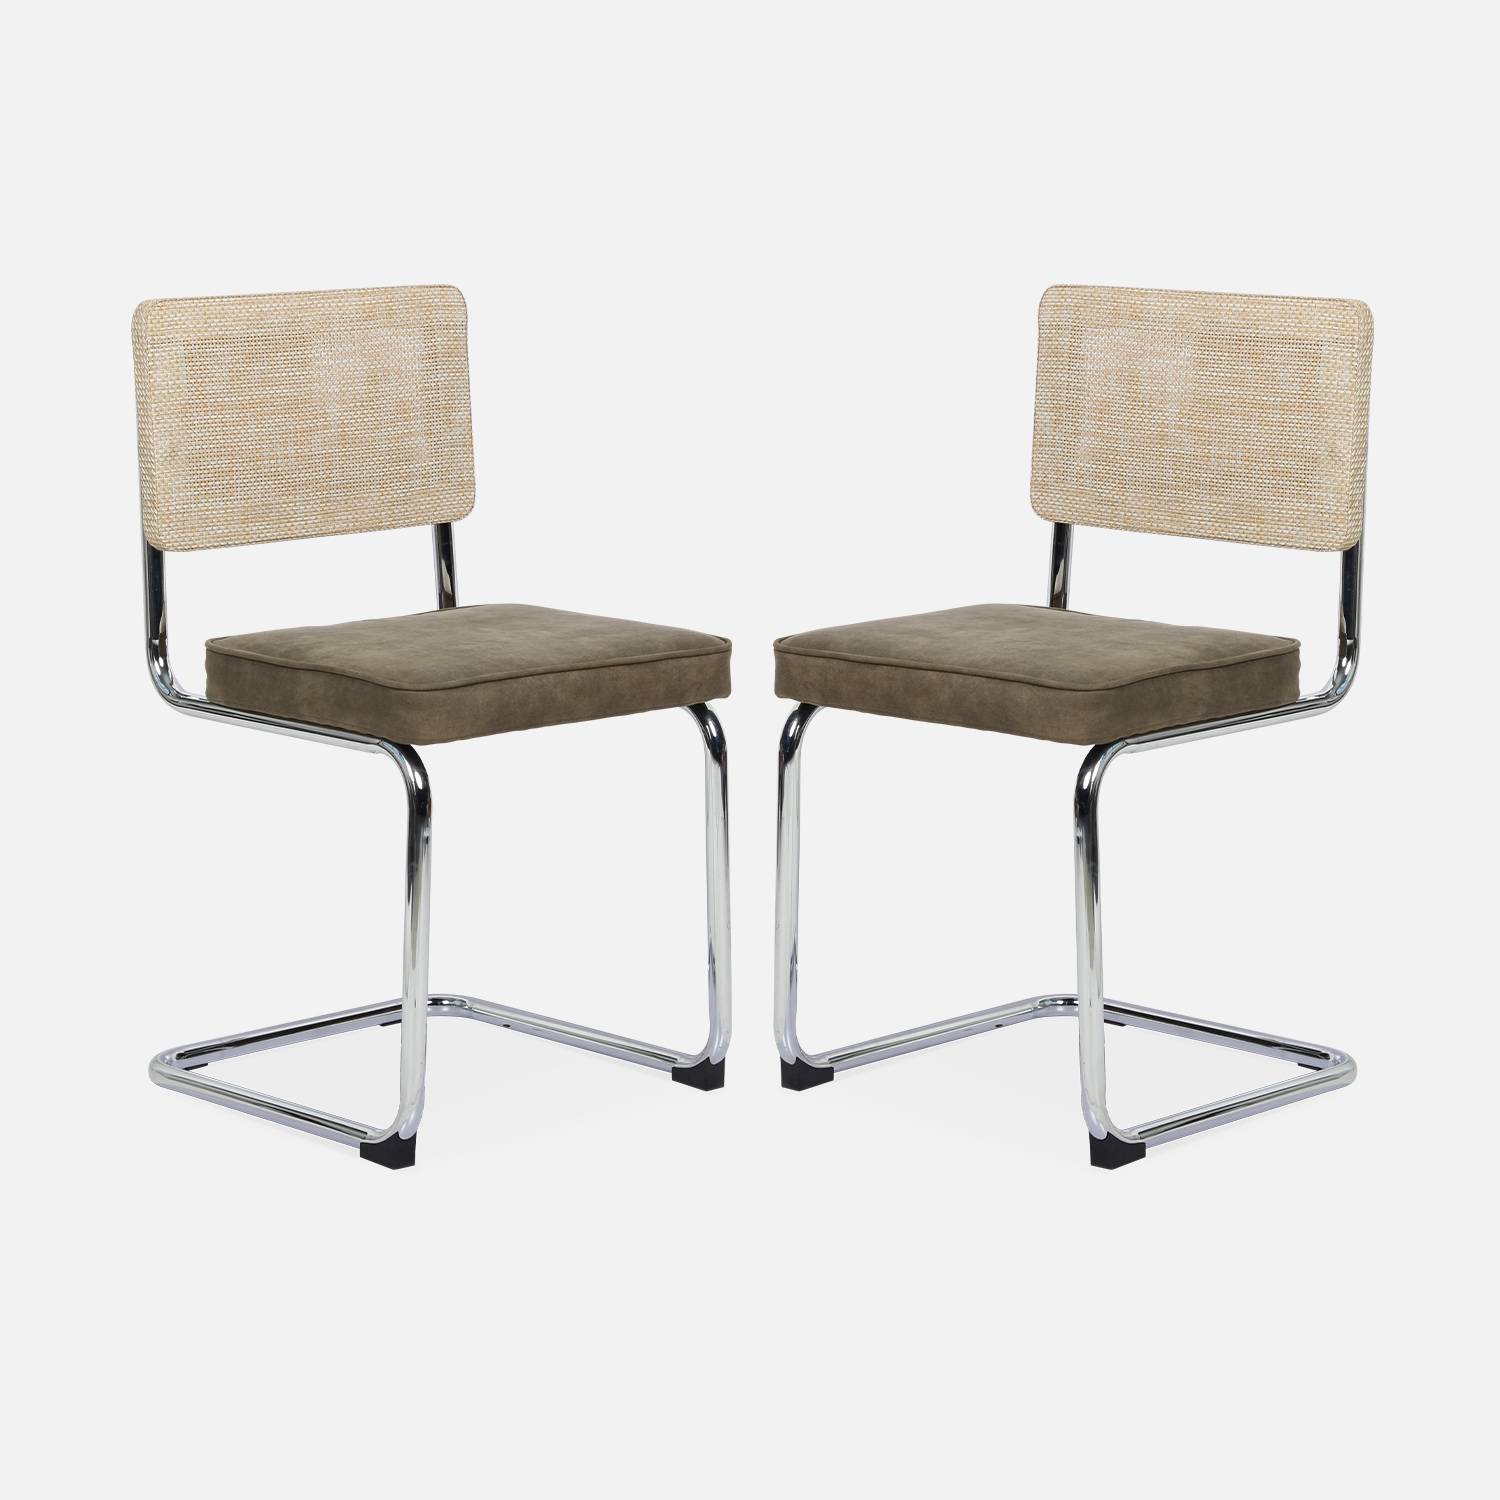 2 cadeiras cantilever - Maja - tecido caqui e resina com efeito rattan, 46 x 54,5 x 84,5 cm Photo5